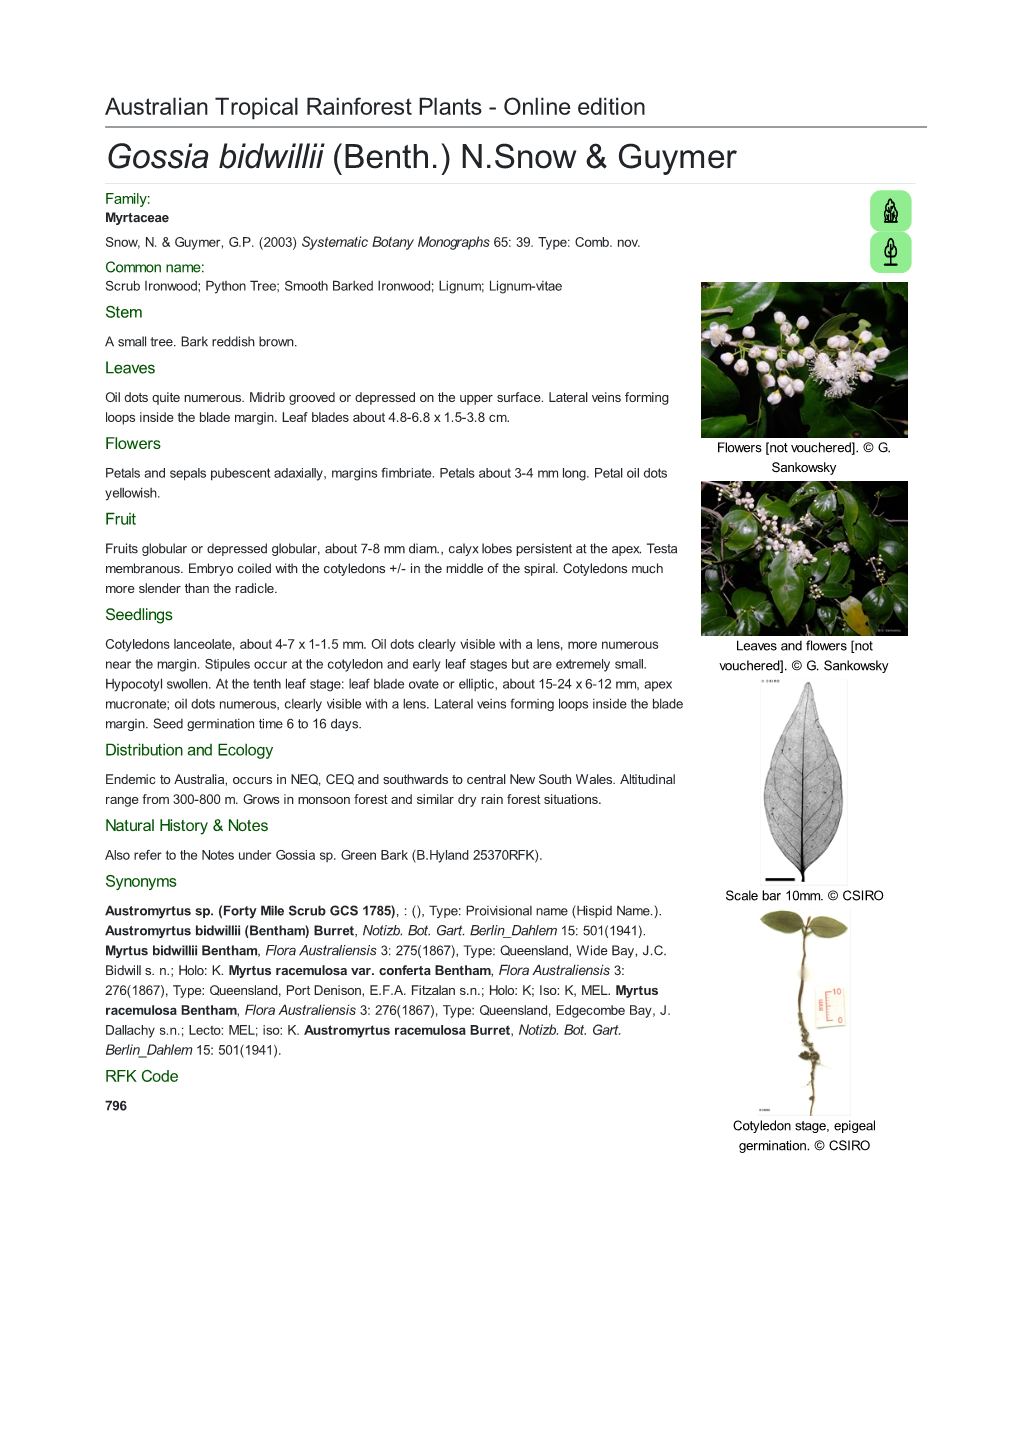 Gossia Bidwillii (Benth.) N.Snow & Guymer Family: Myrtaceae Snow, N